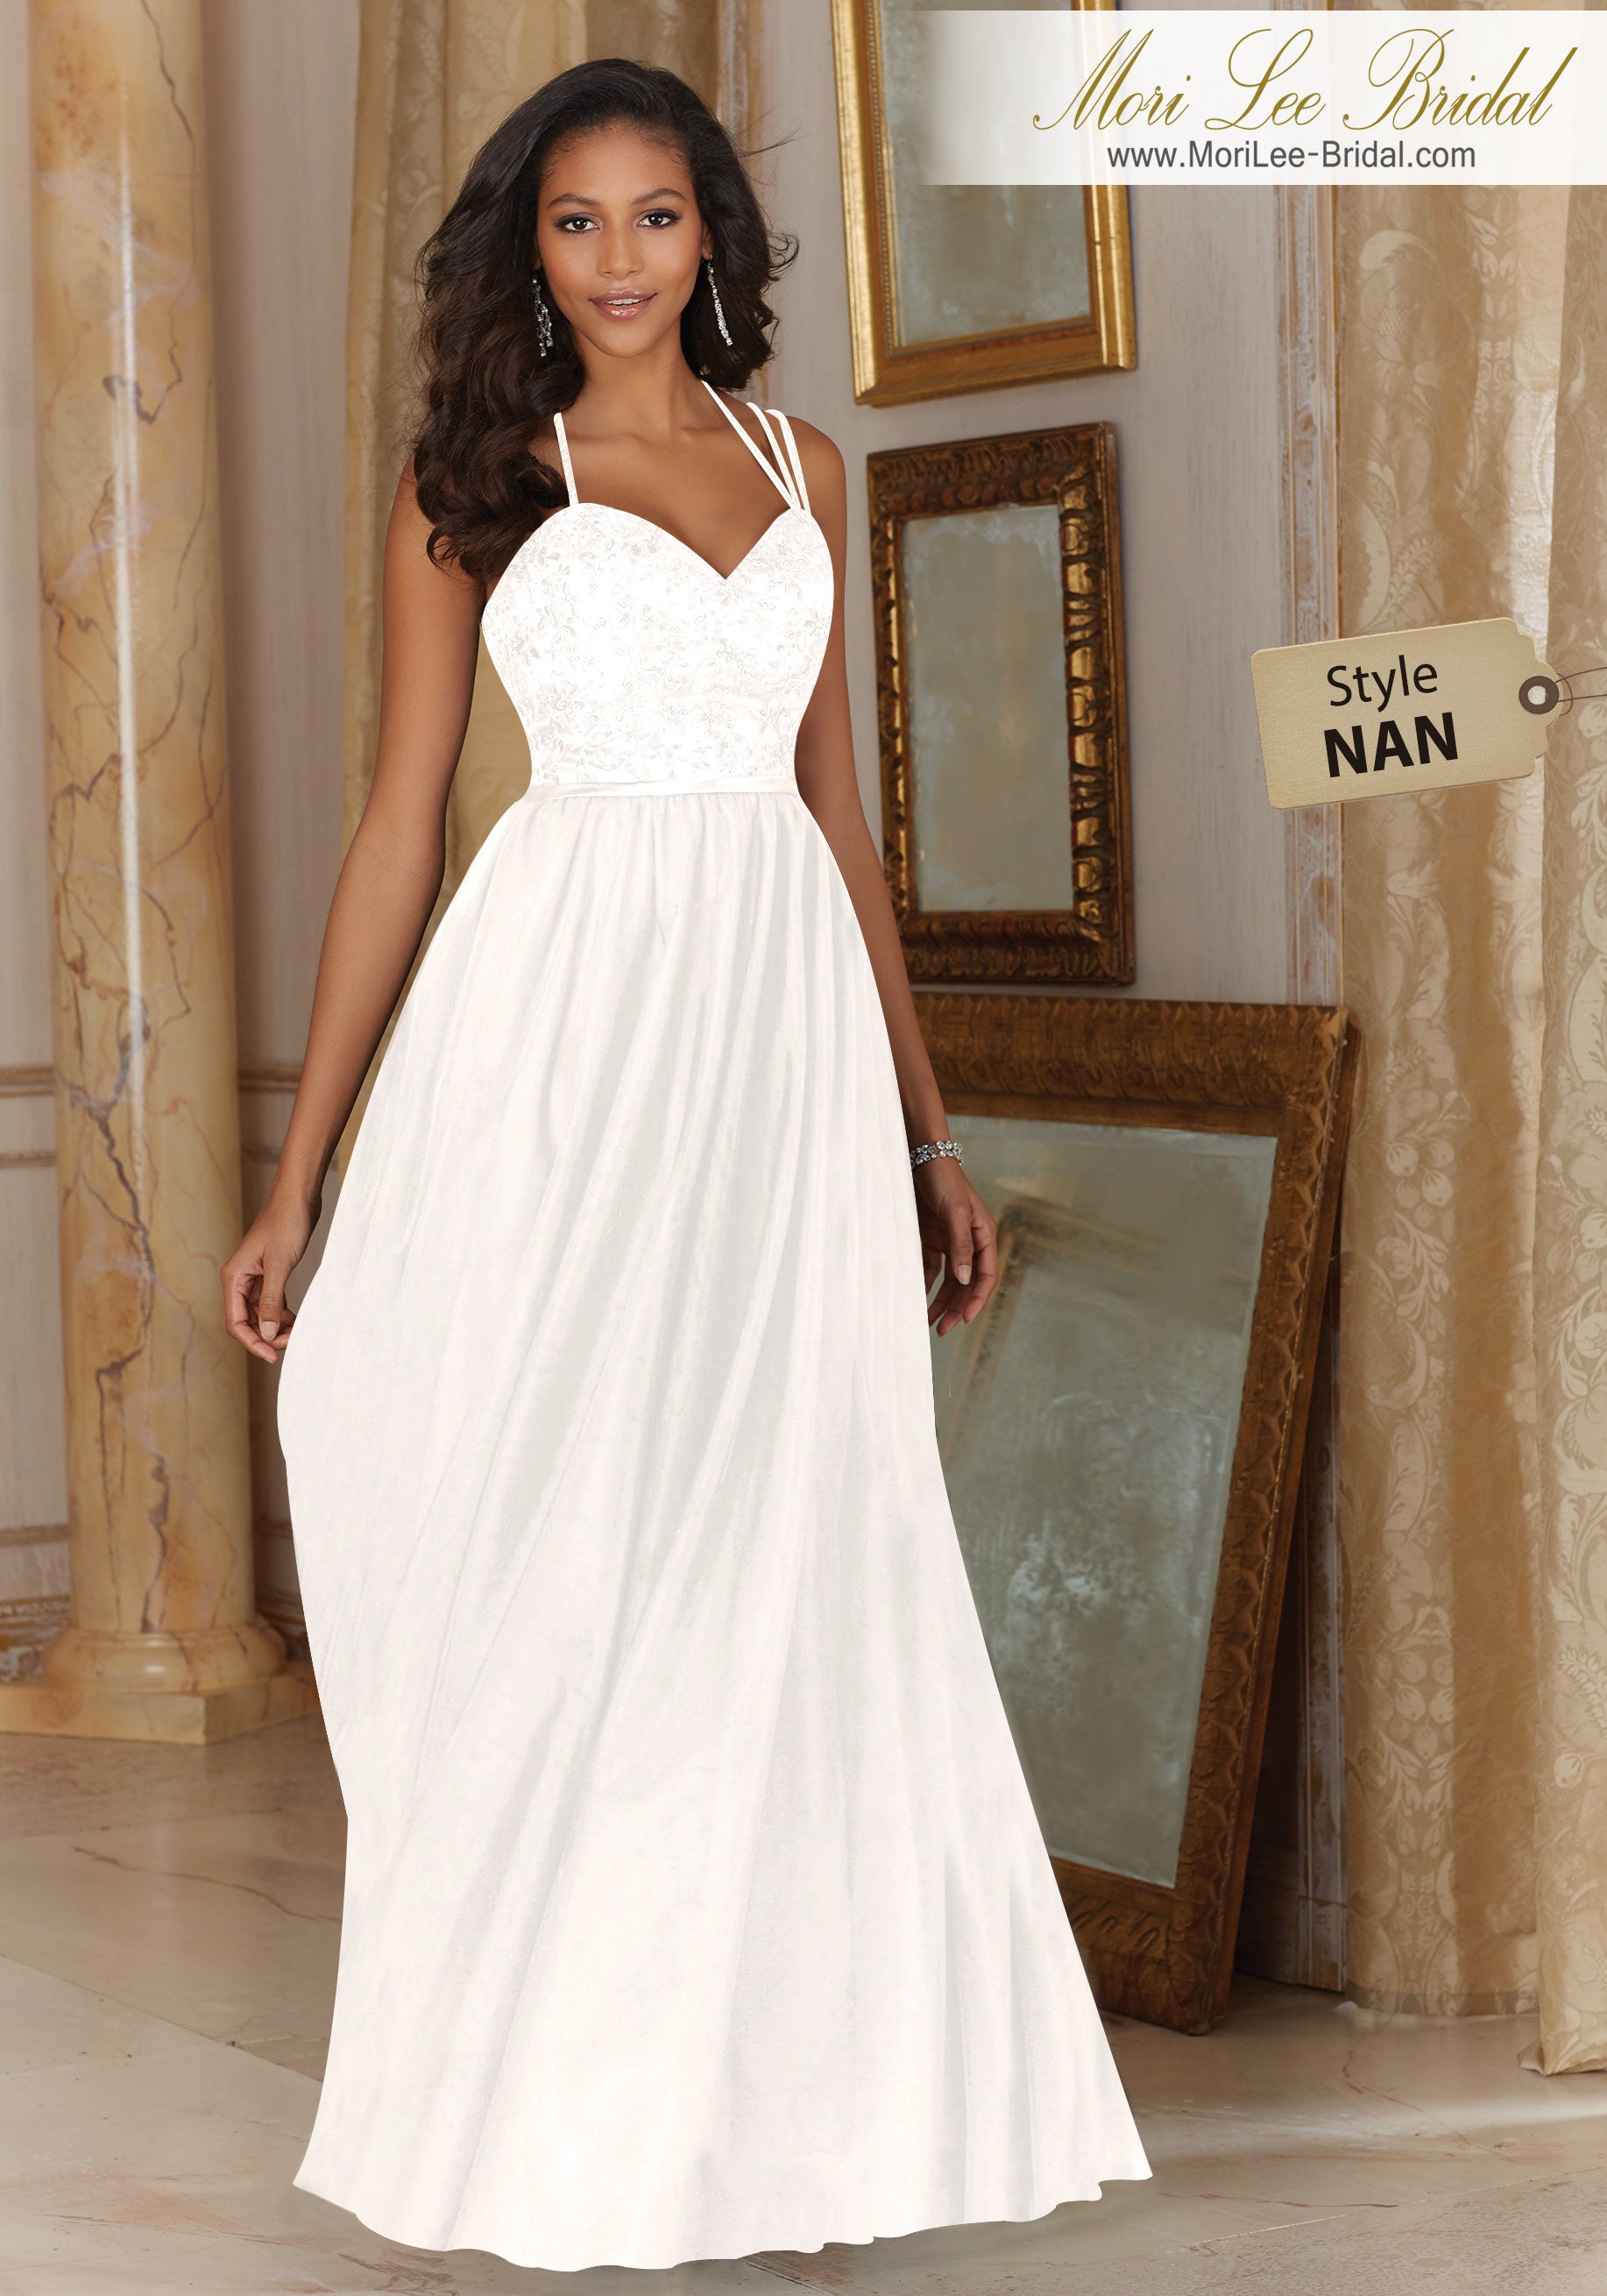 Vestido Civil de tul con bordado y de cintura satinada, hermoso y femenino, ideal para una boda íntima. NAN*